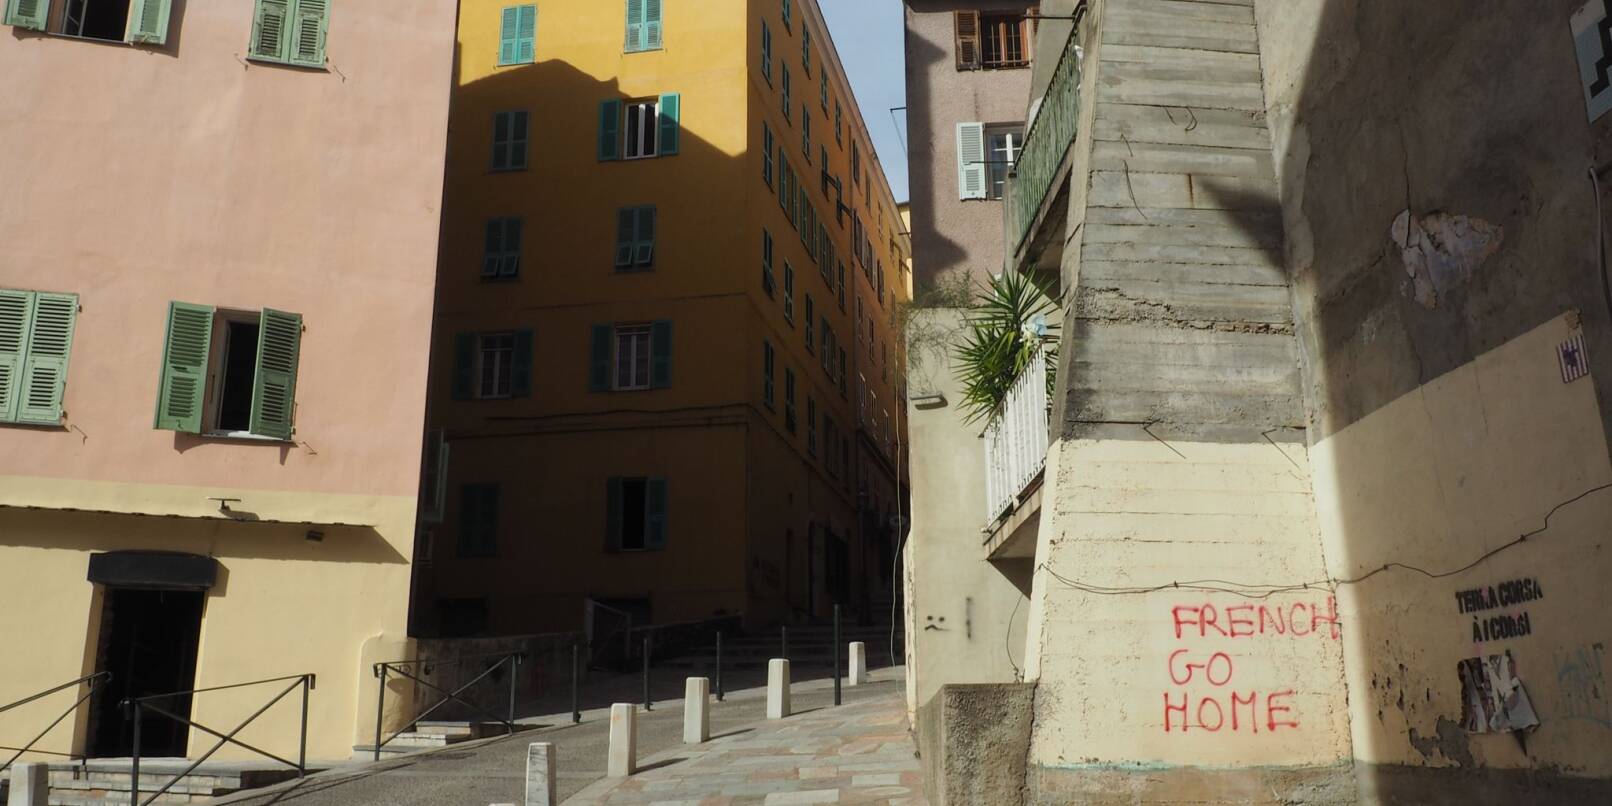 Auf Hauswänden in Bastia auf Korsika sind anti-französische Sprüche zu lesen.